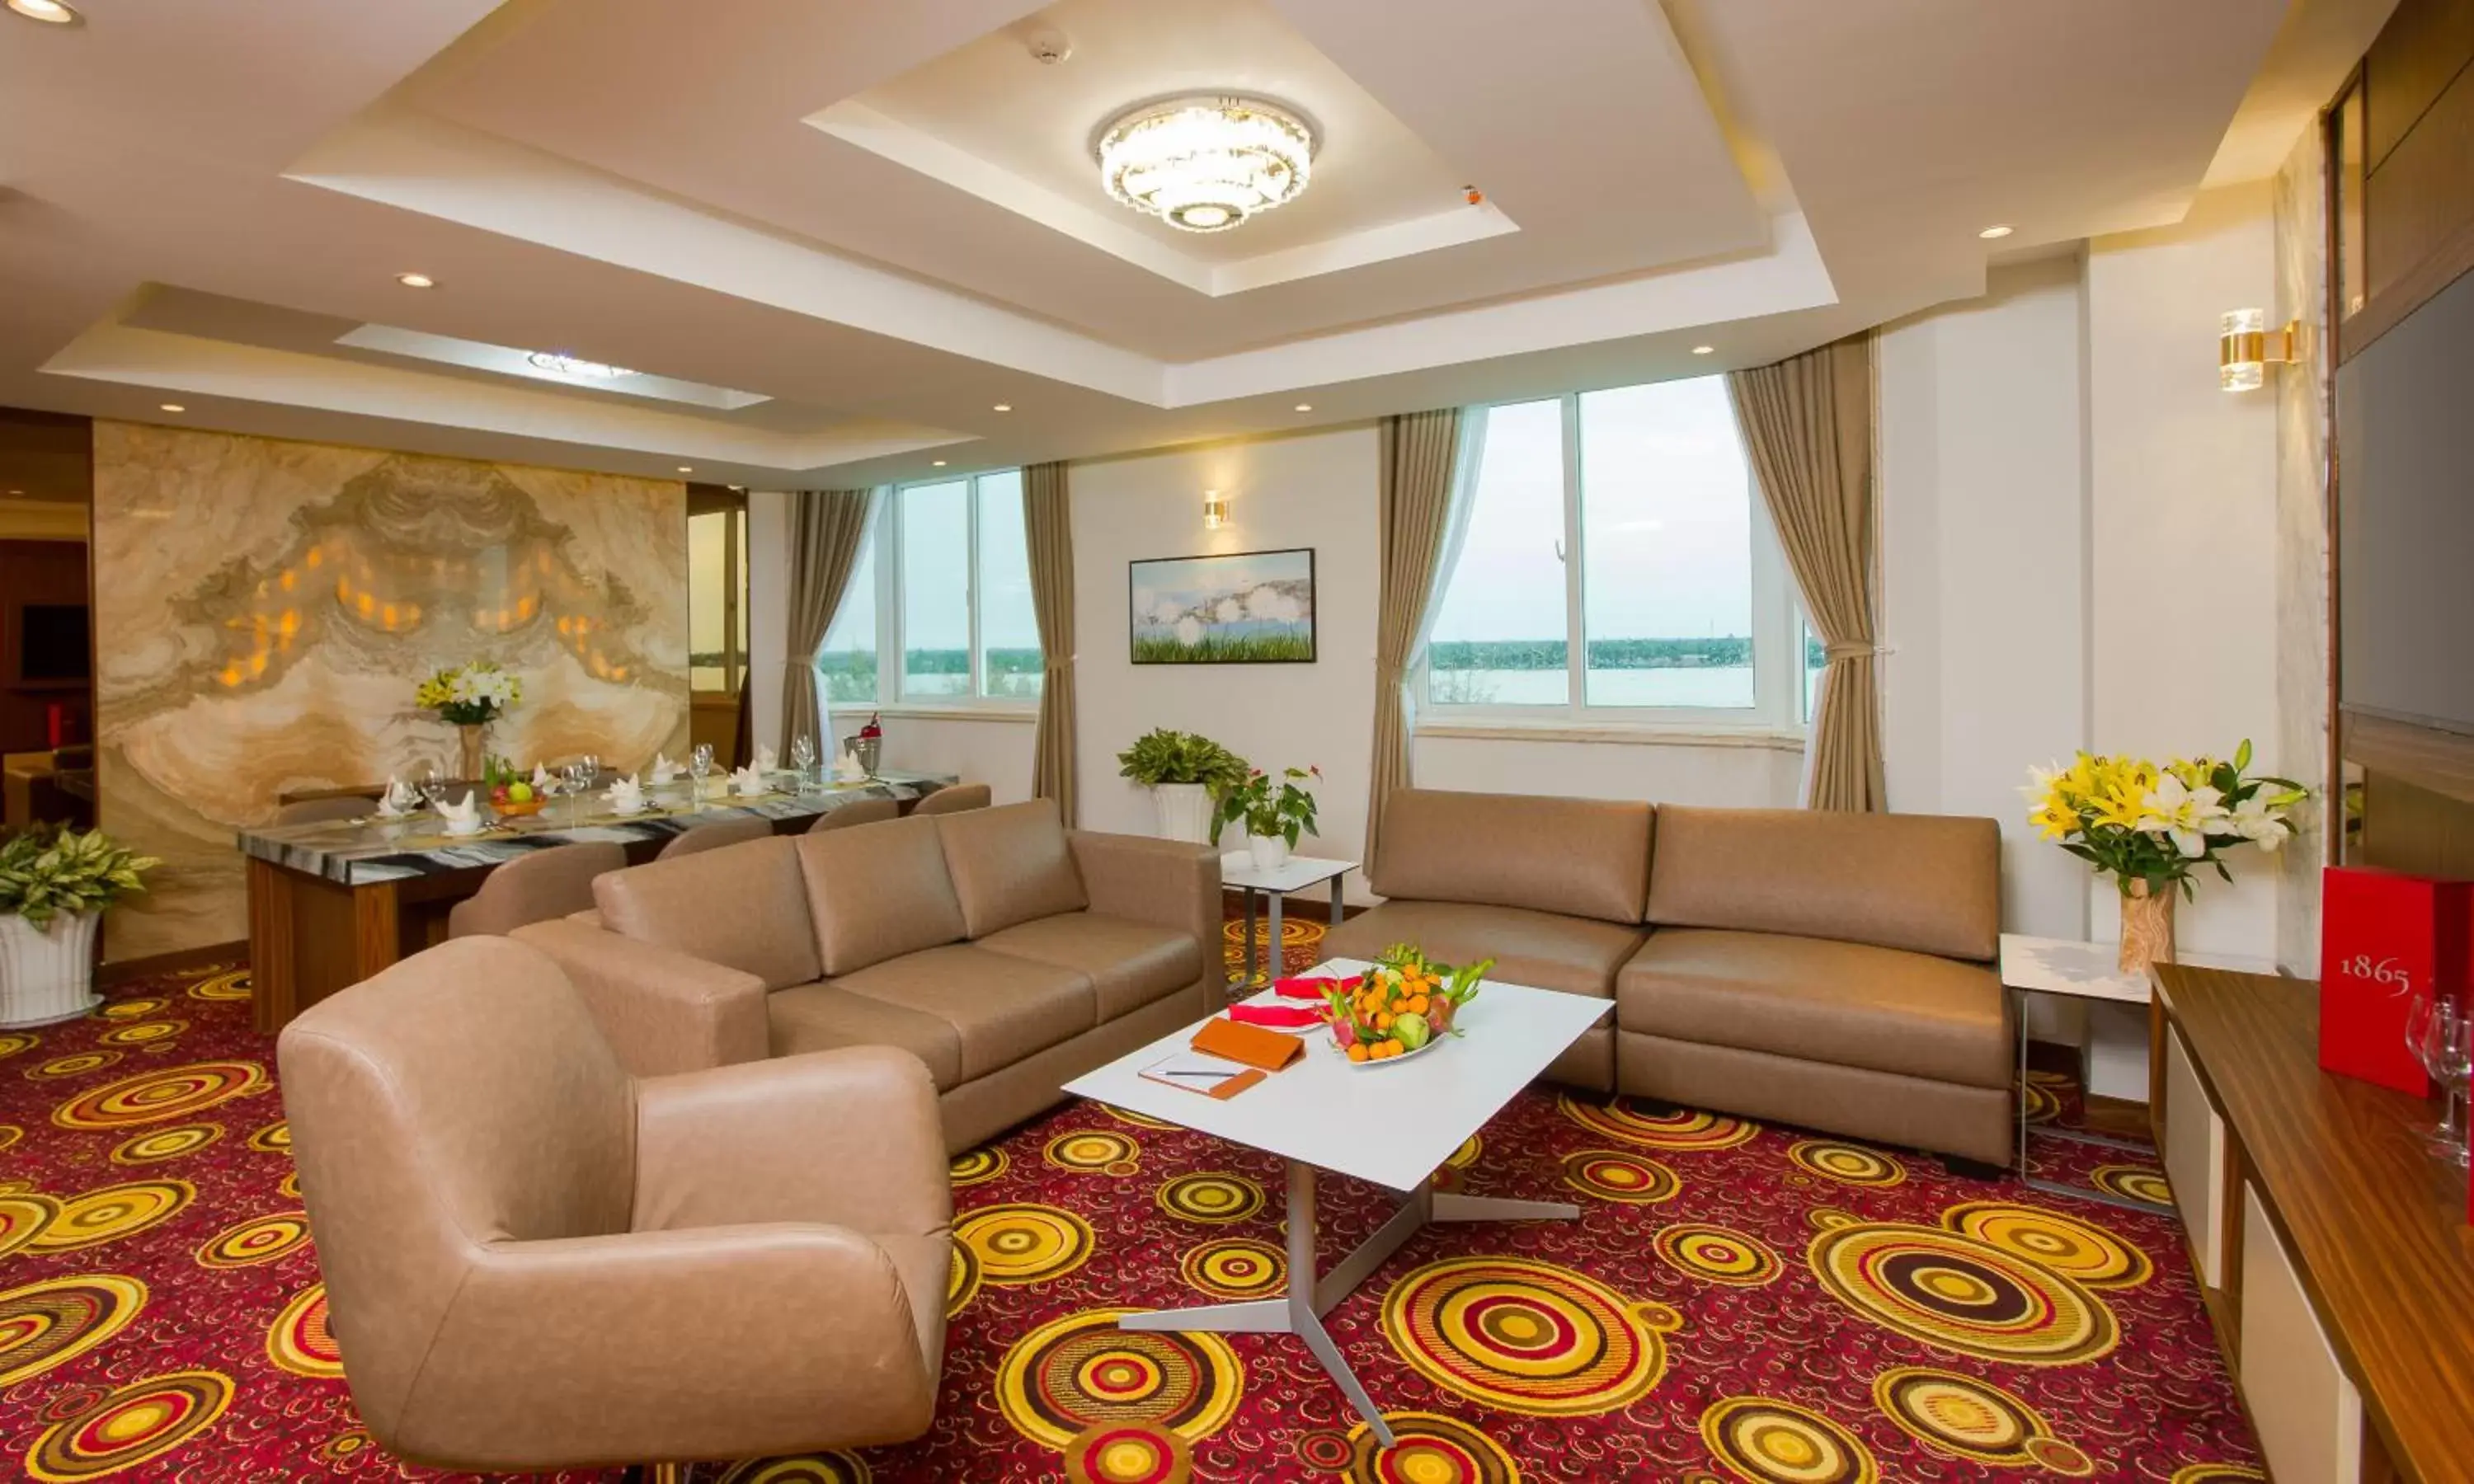 TV and multimedia, Seating Area in Van Phat Riverside Hotel